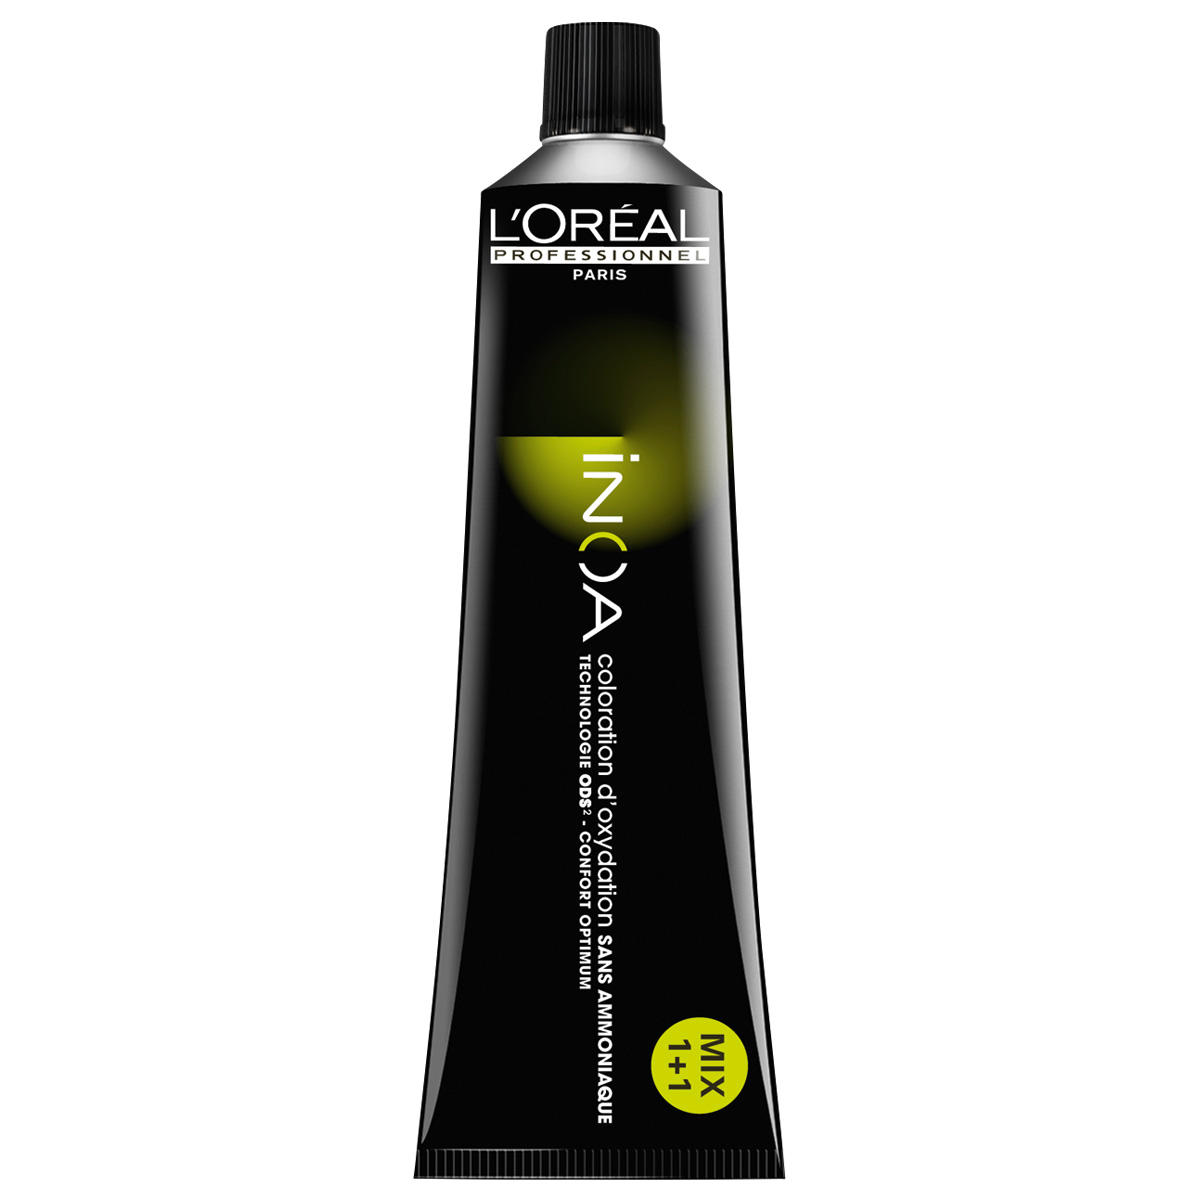 L'Oréal Professionnel Paris Coloration 5,25 Marrón claro Irisé Caoba, tubo 60 ml